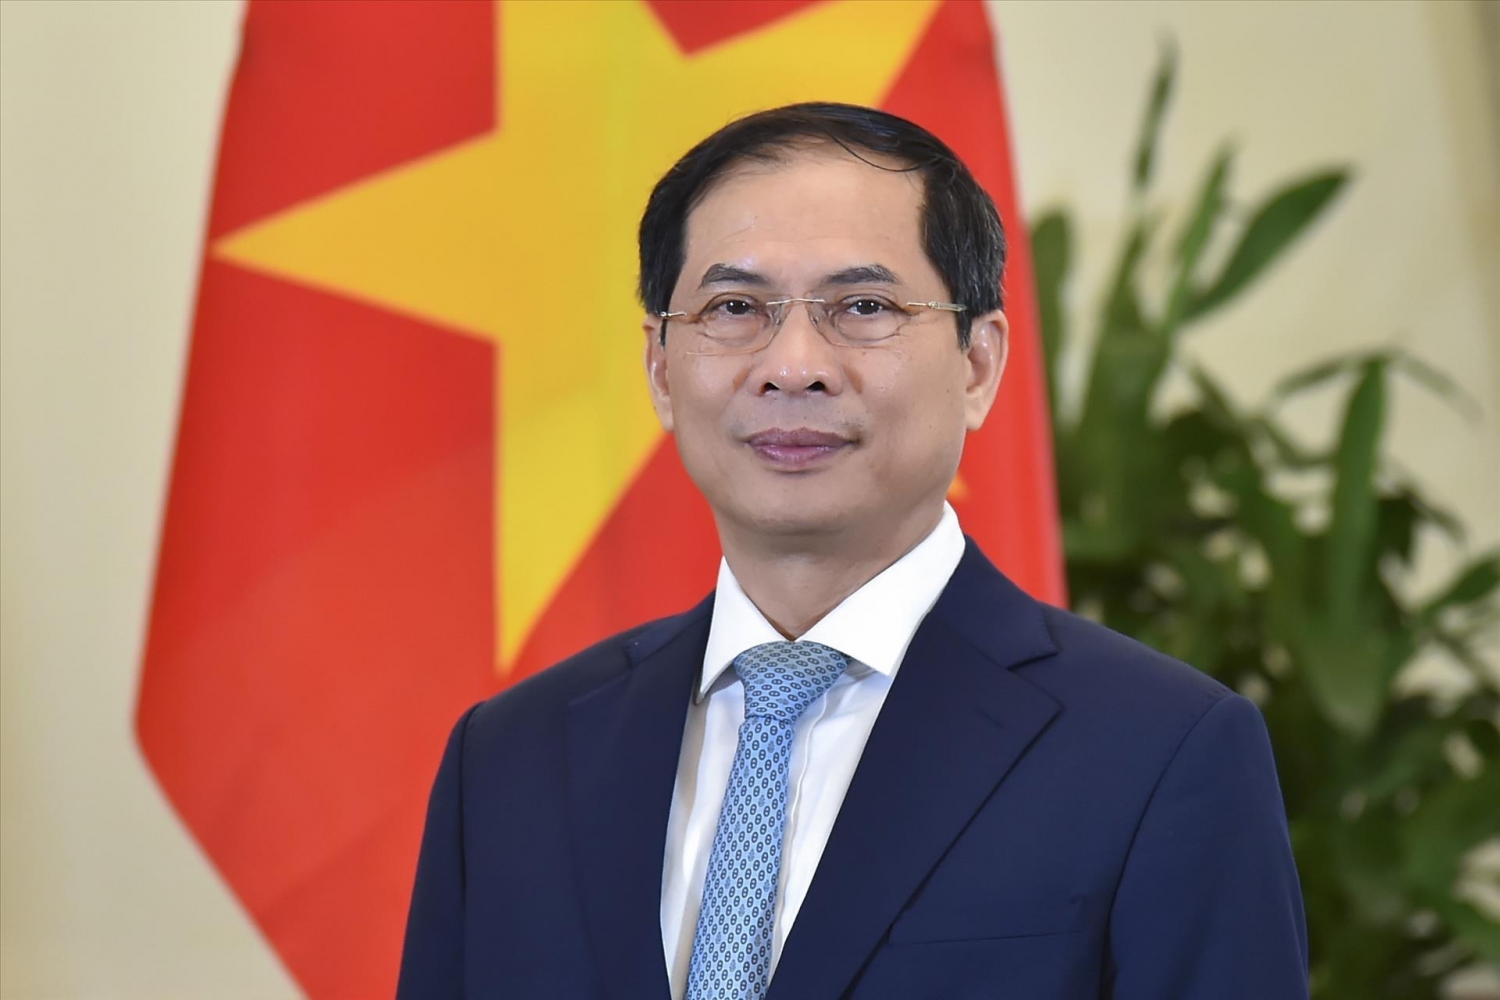 Chuyến thăm Singapore và Brunei của Thủ tướng Phạm Minh Chính đạt được những kết quả rất toàn diện, thực chất và cụ thể